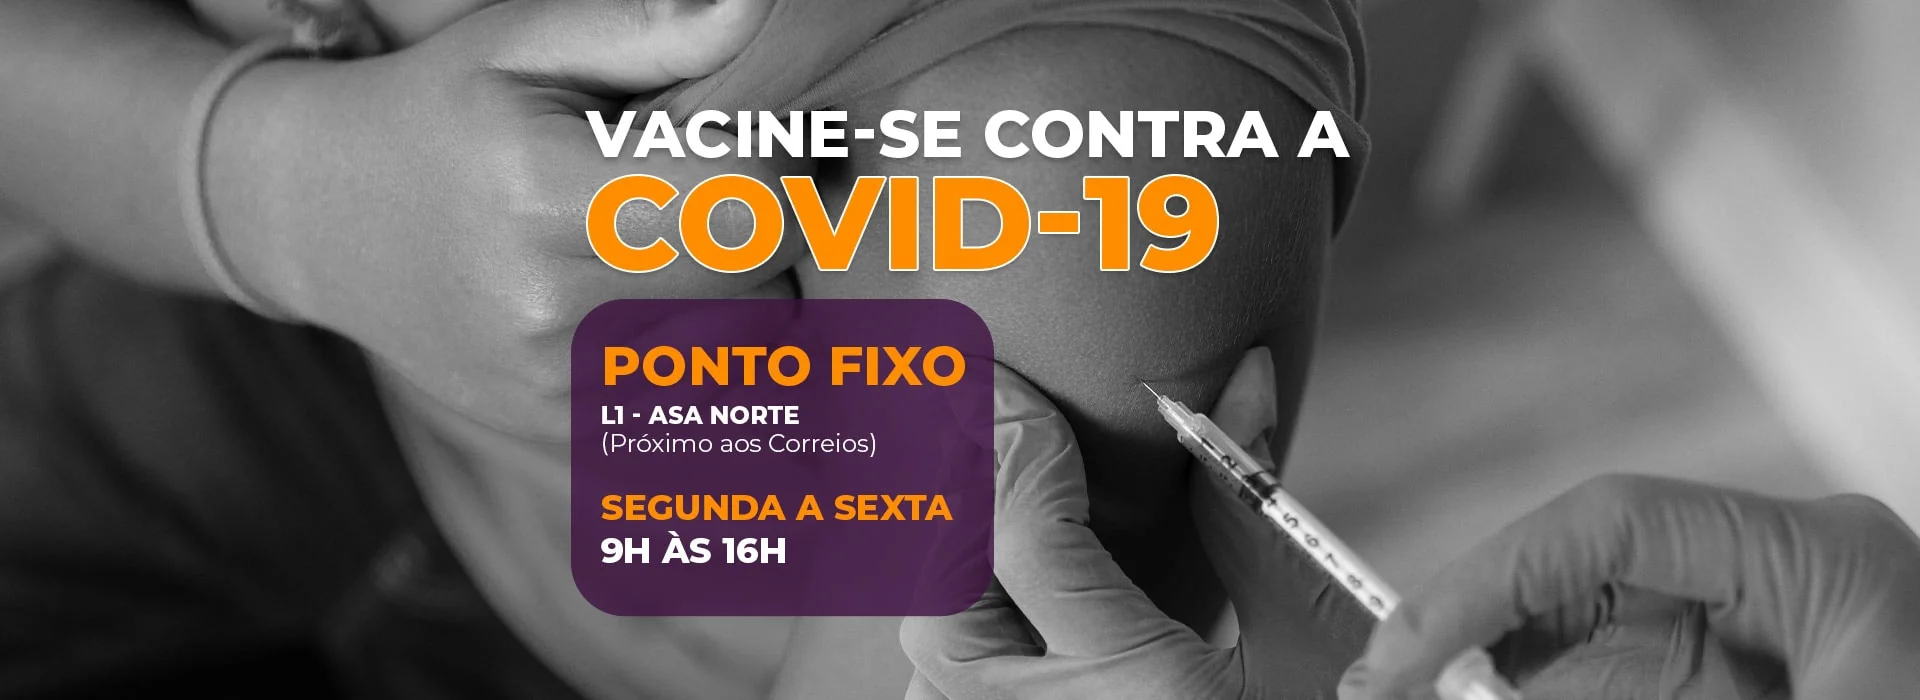 Vacinação Covid-19 | ponto fixo